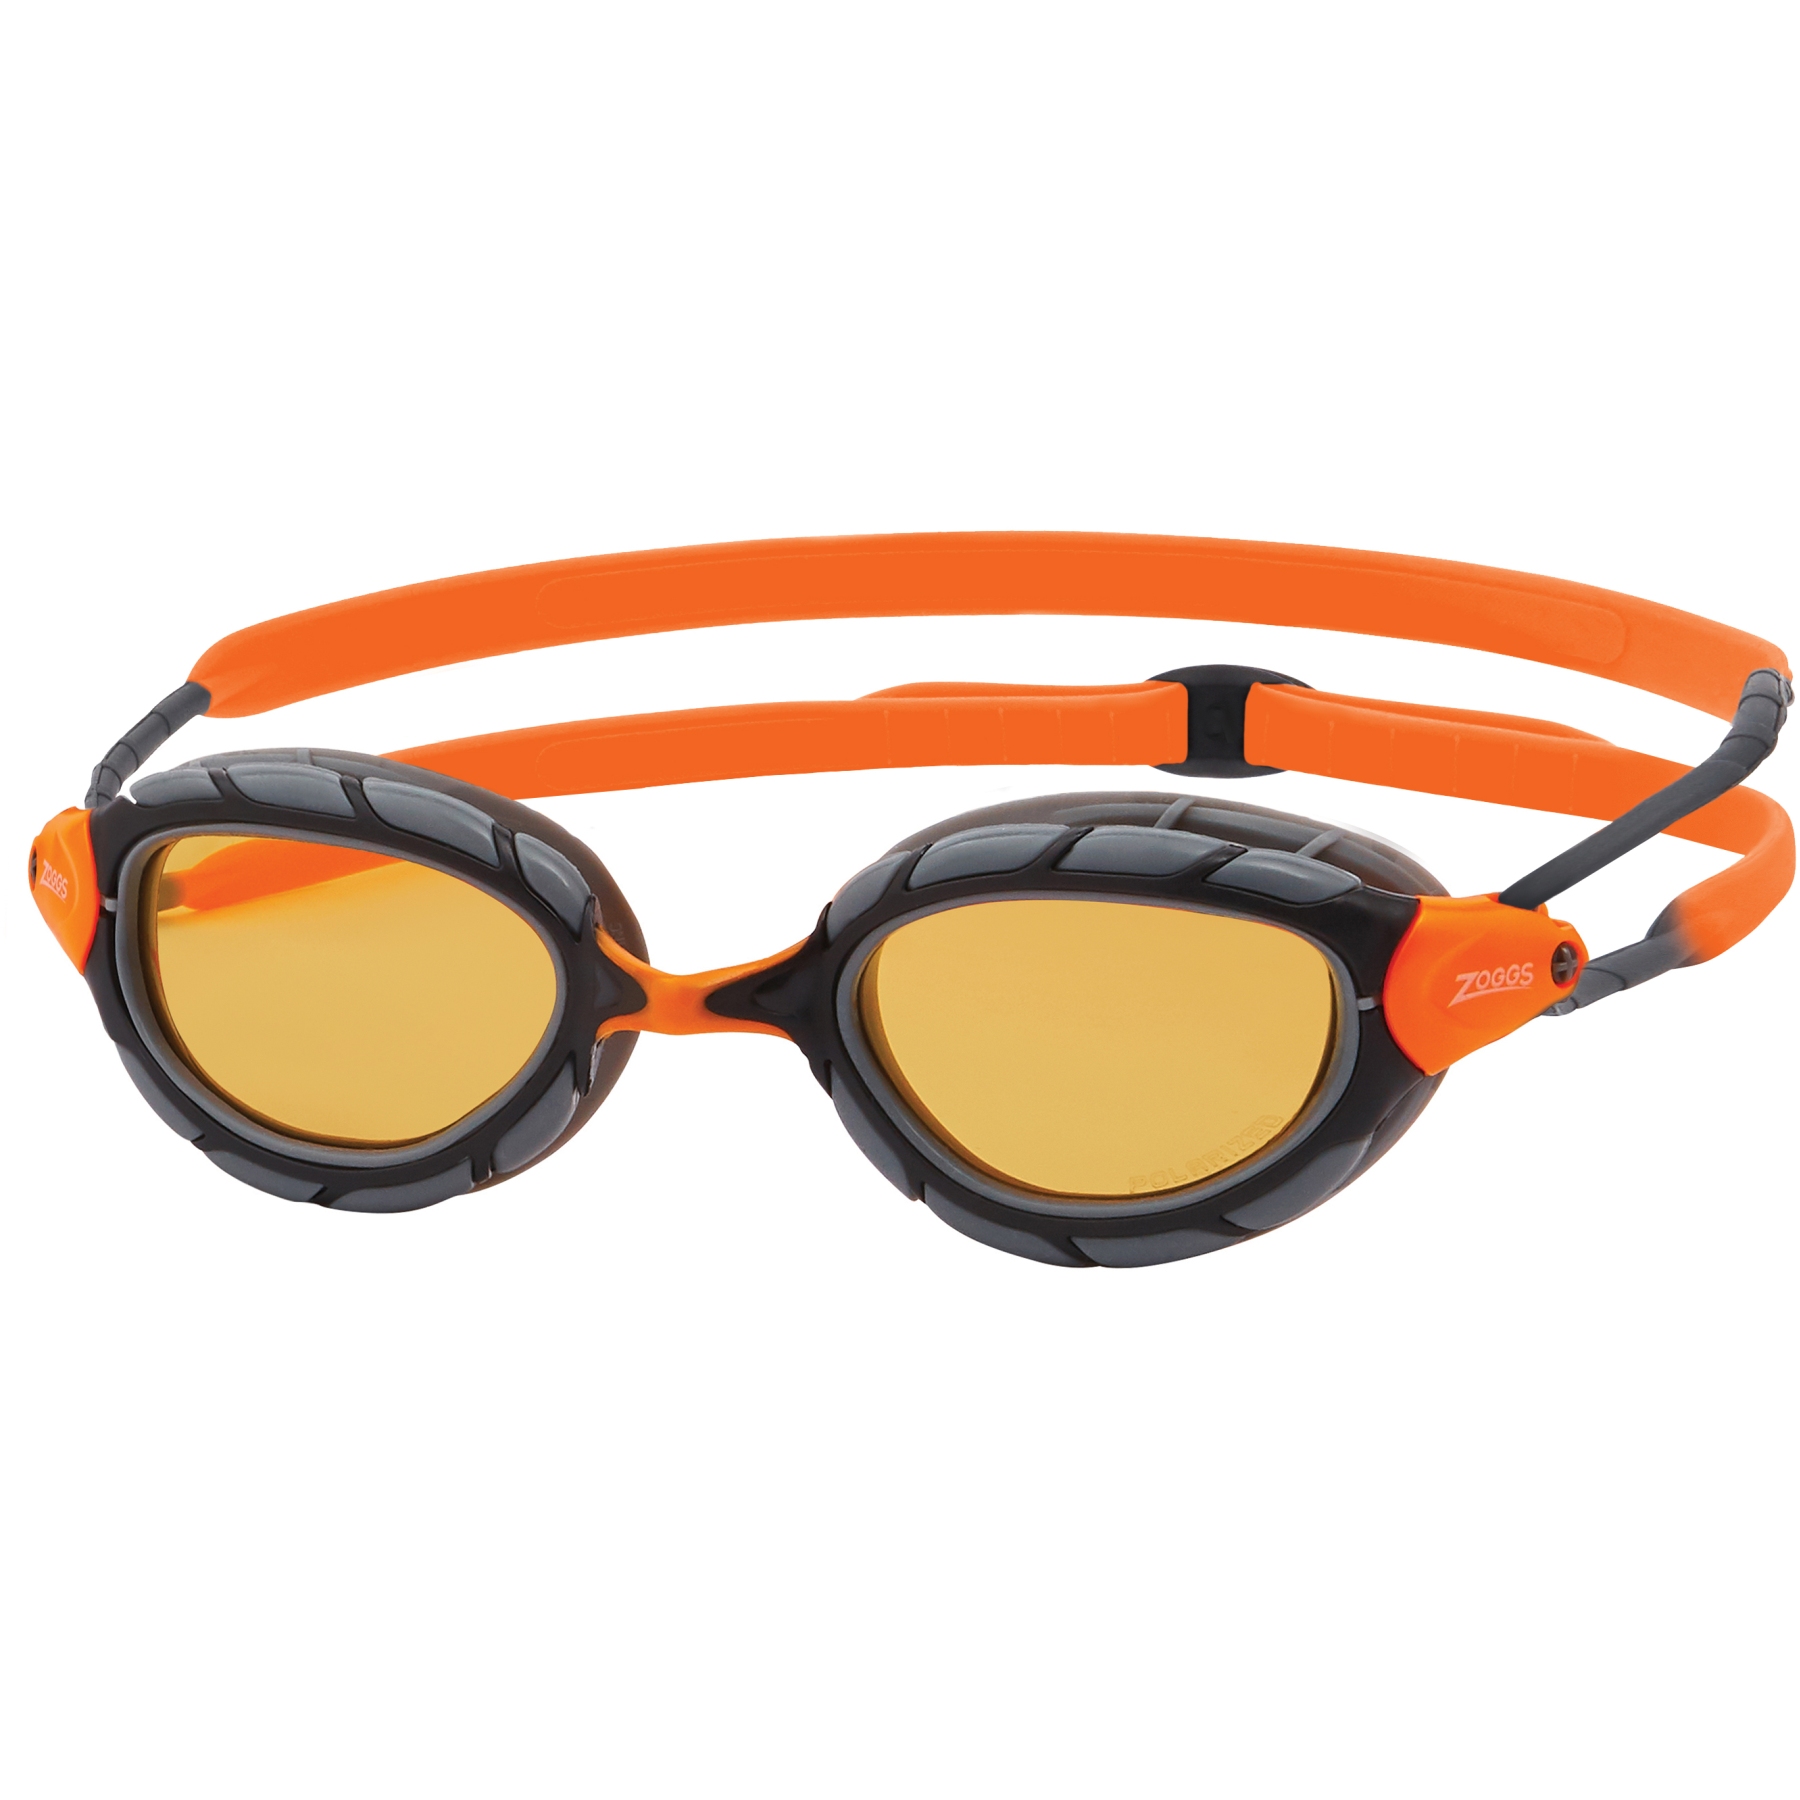 Productfoto van Zoggs Predator Swimming Goggles - Polarized Ultra Copper Lenses - Small Fit - Grey/Orange